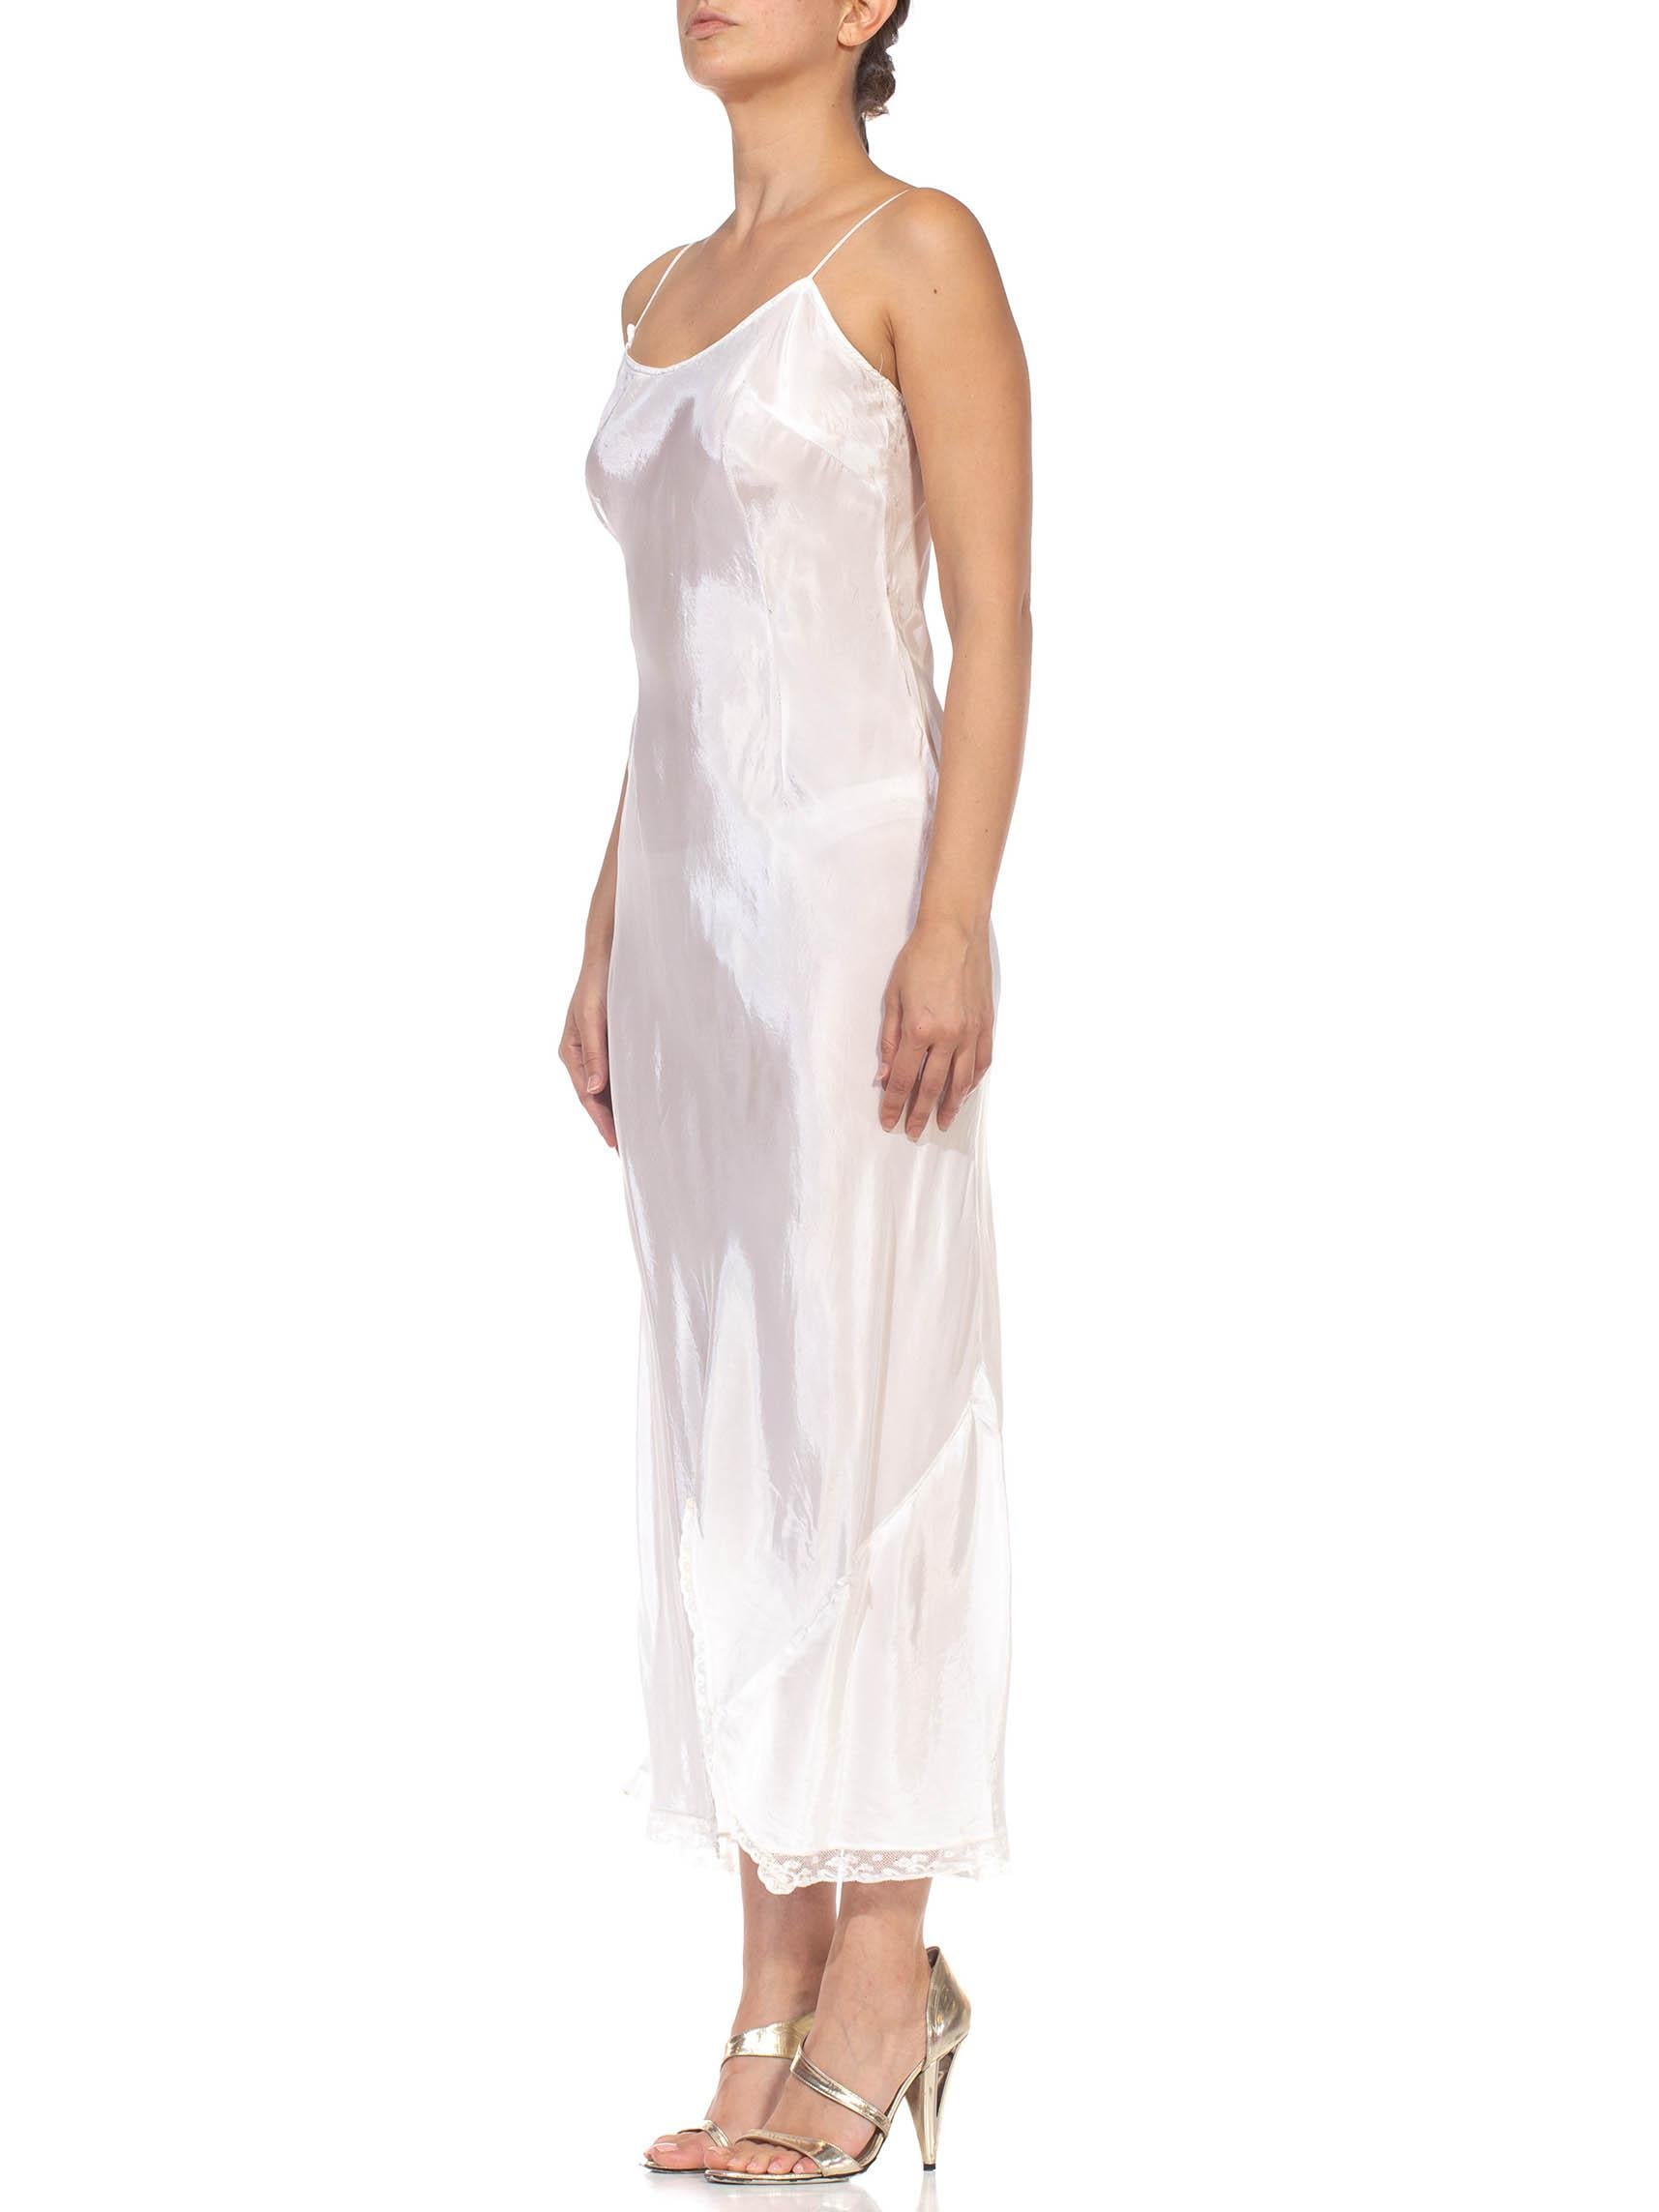 1930S White Bias Cut Rayon Slip Dress For Sale 3